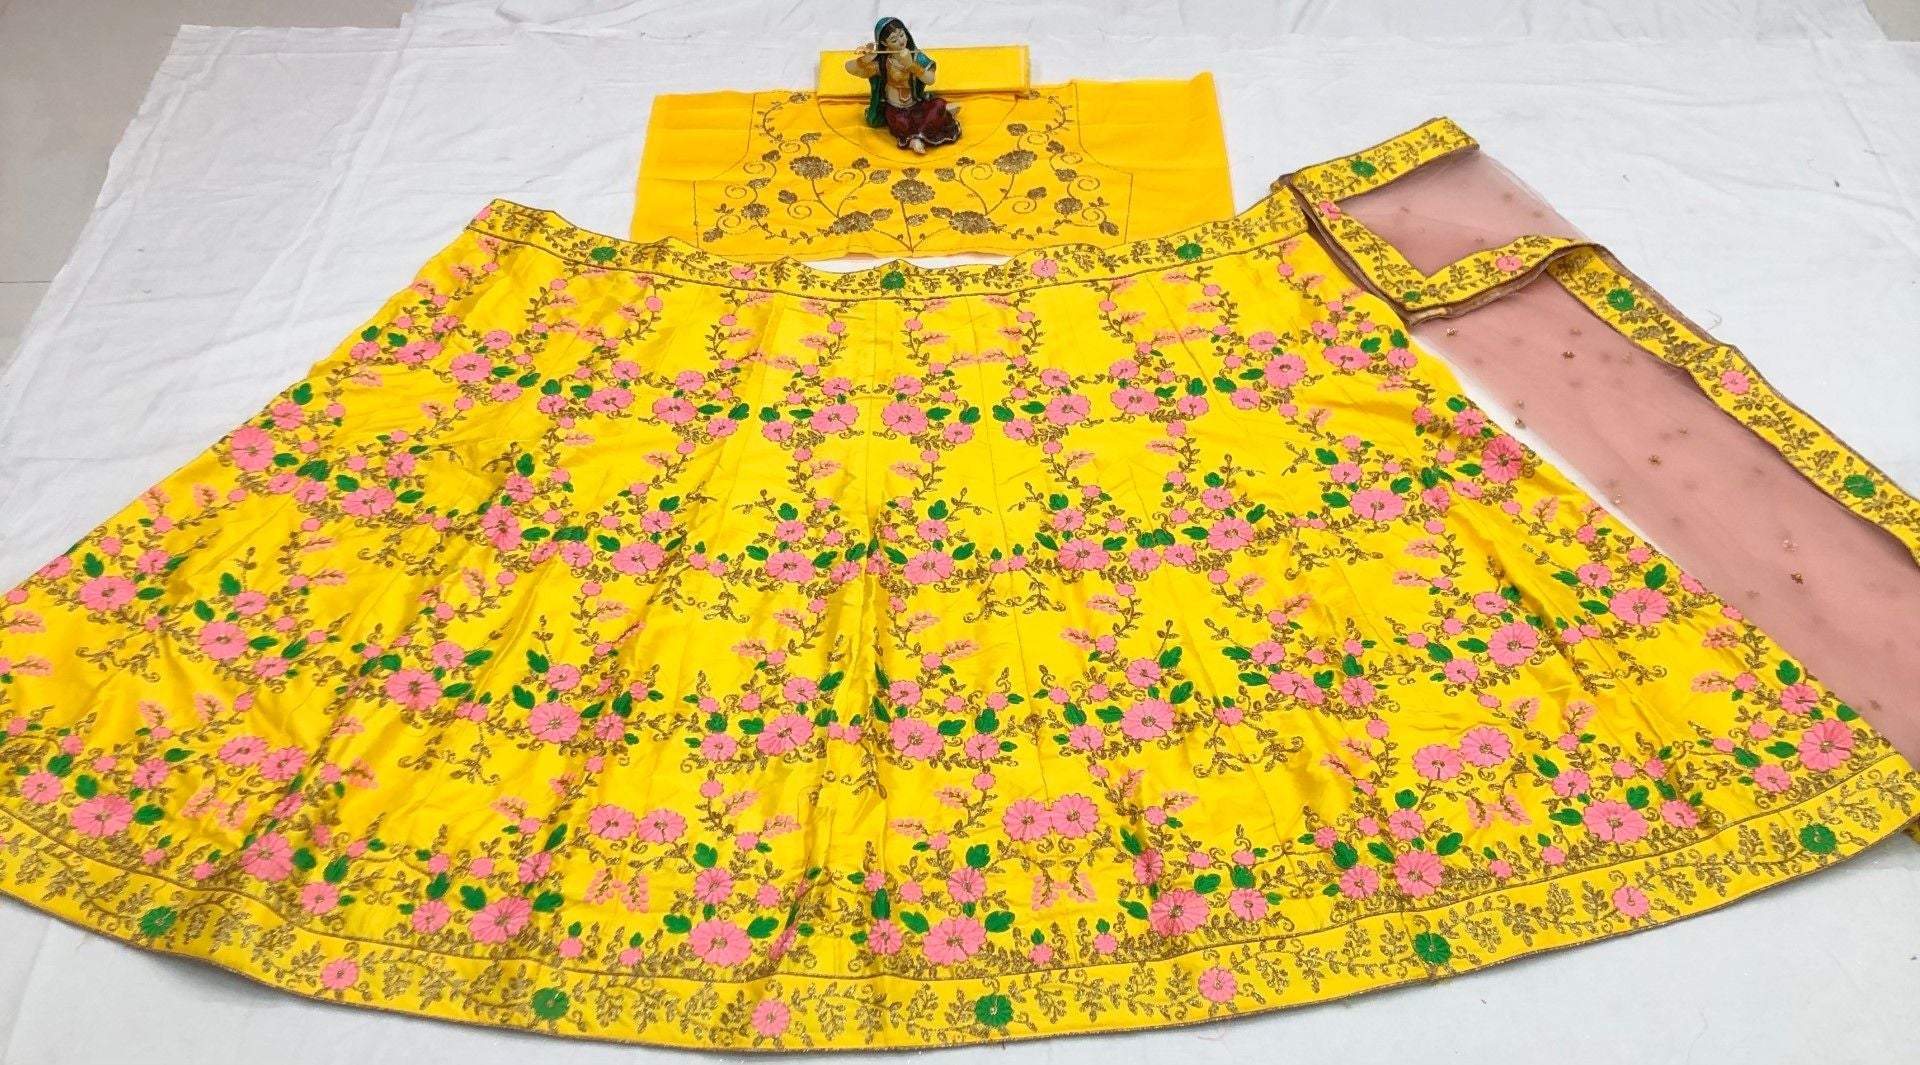 Yellow Lehenga Choli In Malai Satin Silk With Embroidery Work